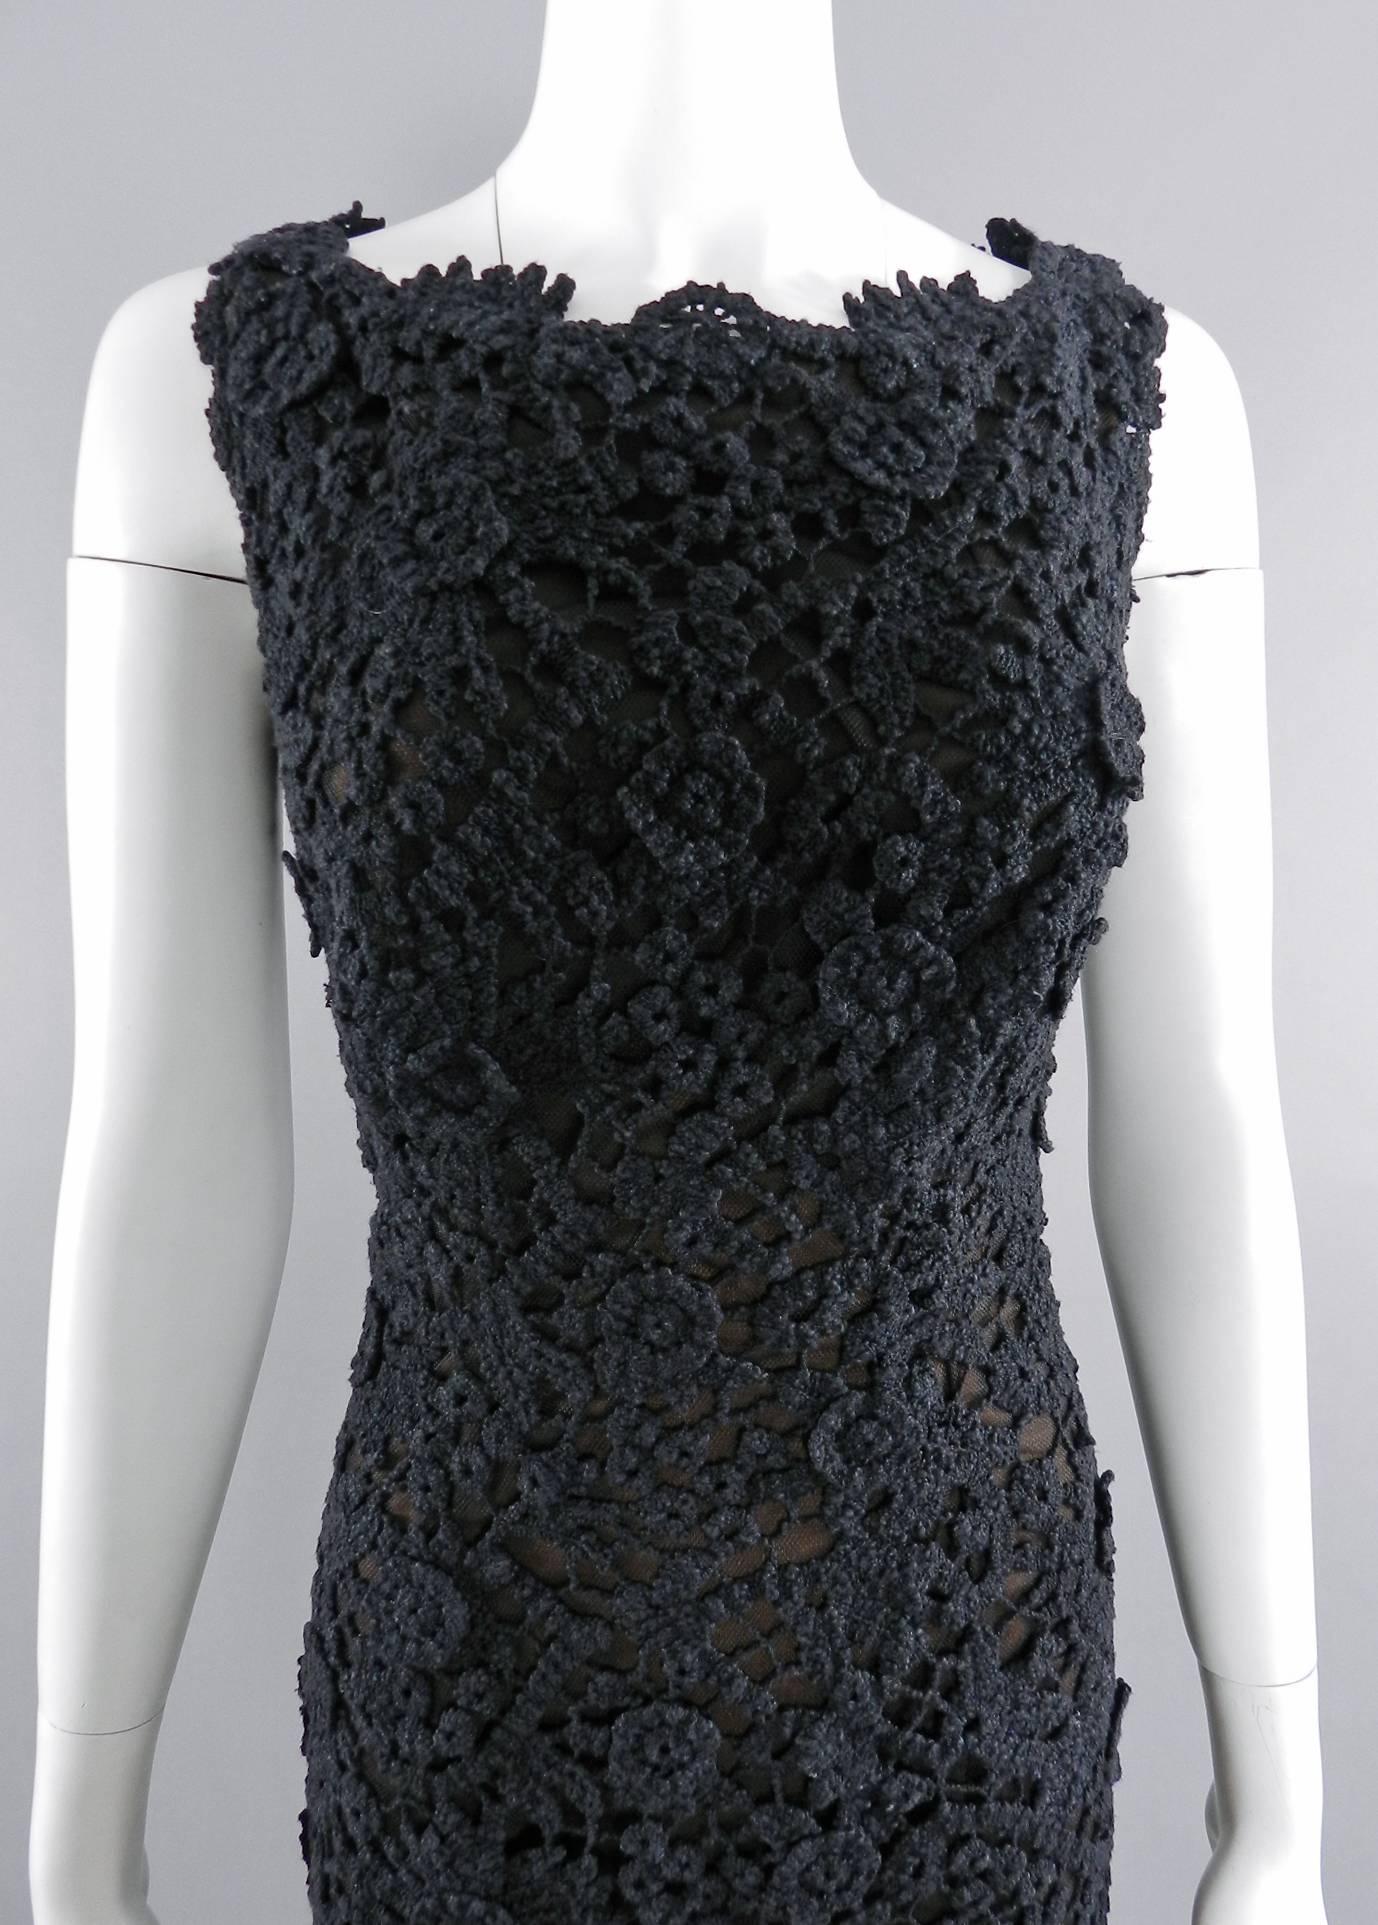 Pierre Balmain Haute Couture by Oscar de La Renta Black Lace Dress 1990's 2